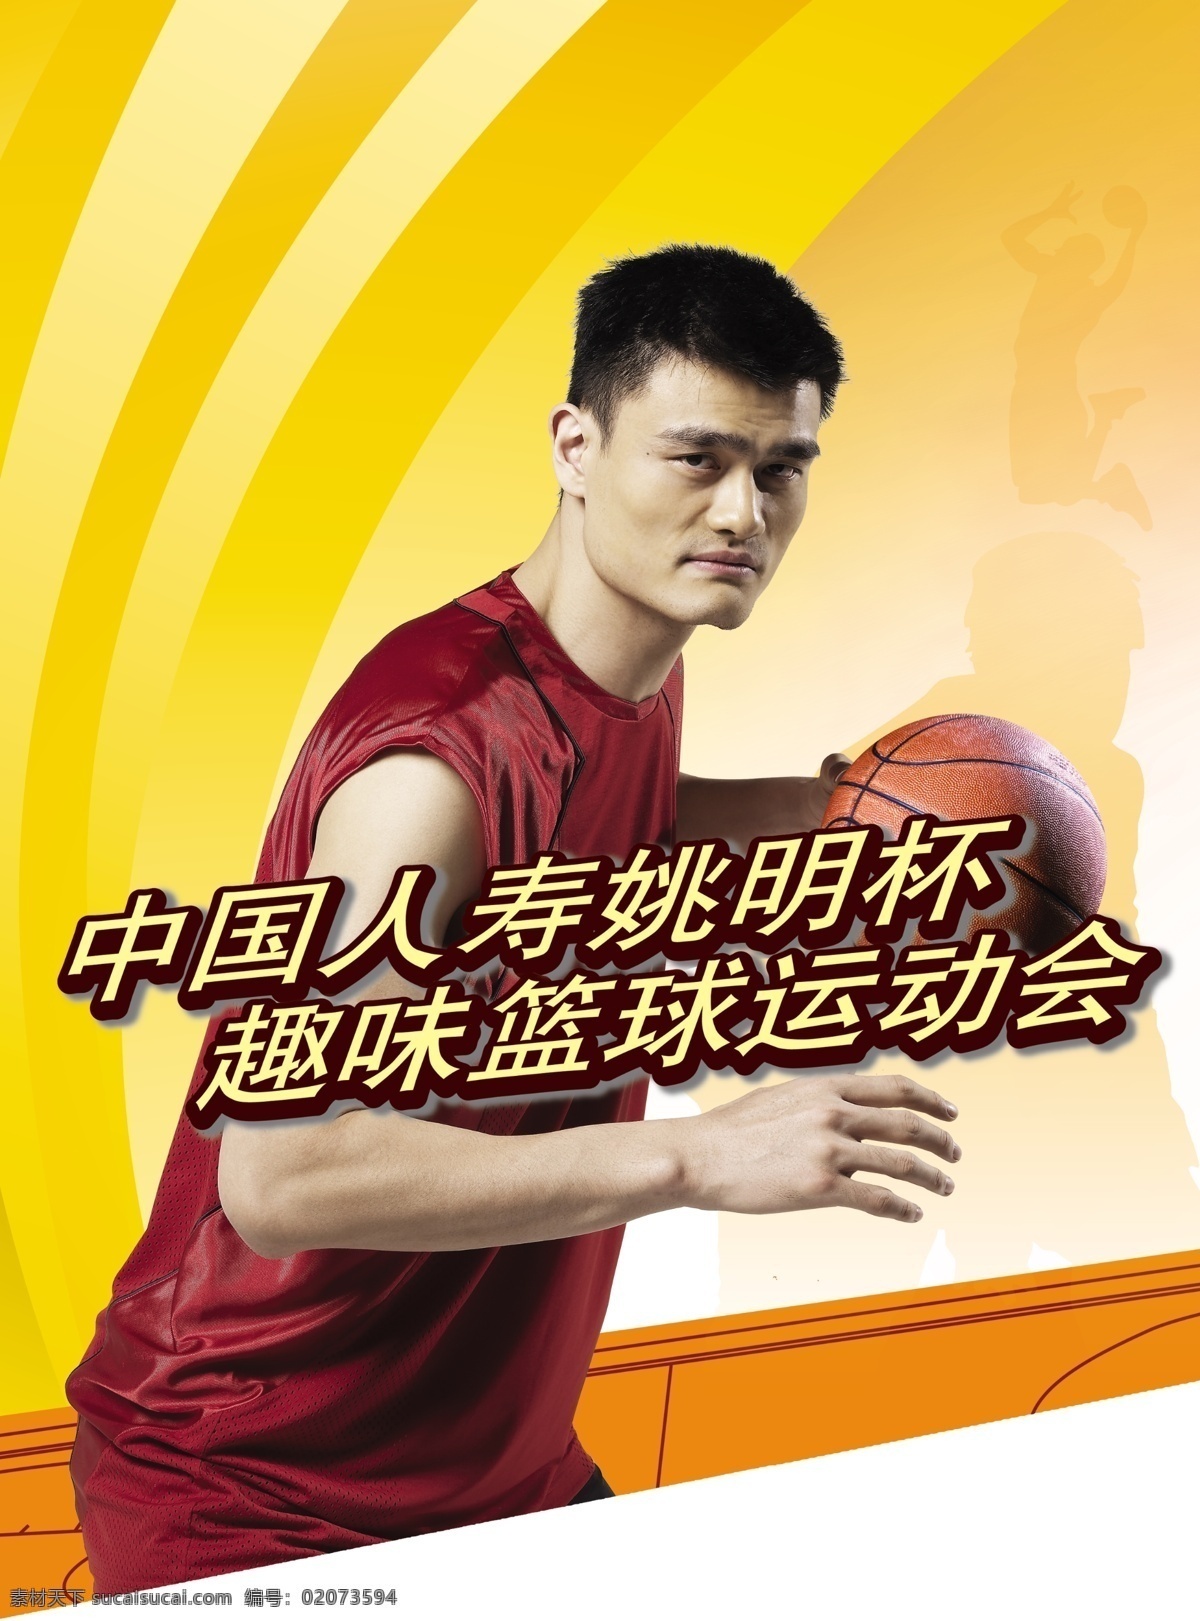 中国 人寿 姚明 杯 趣味 篮球 运动会 中国人寿 篮球运动会 广告设计模板 源文件库